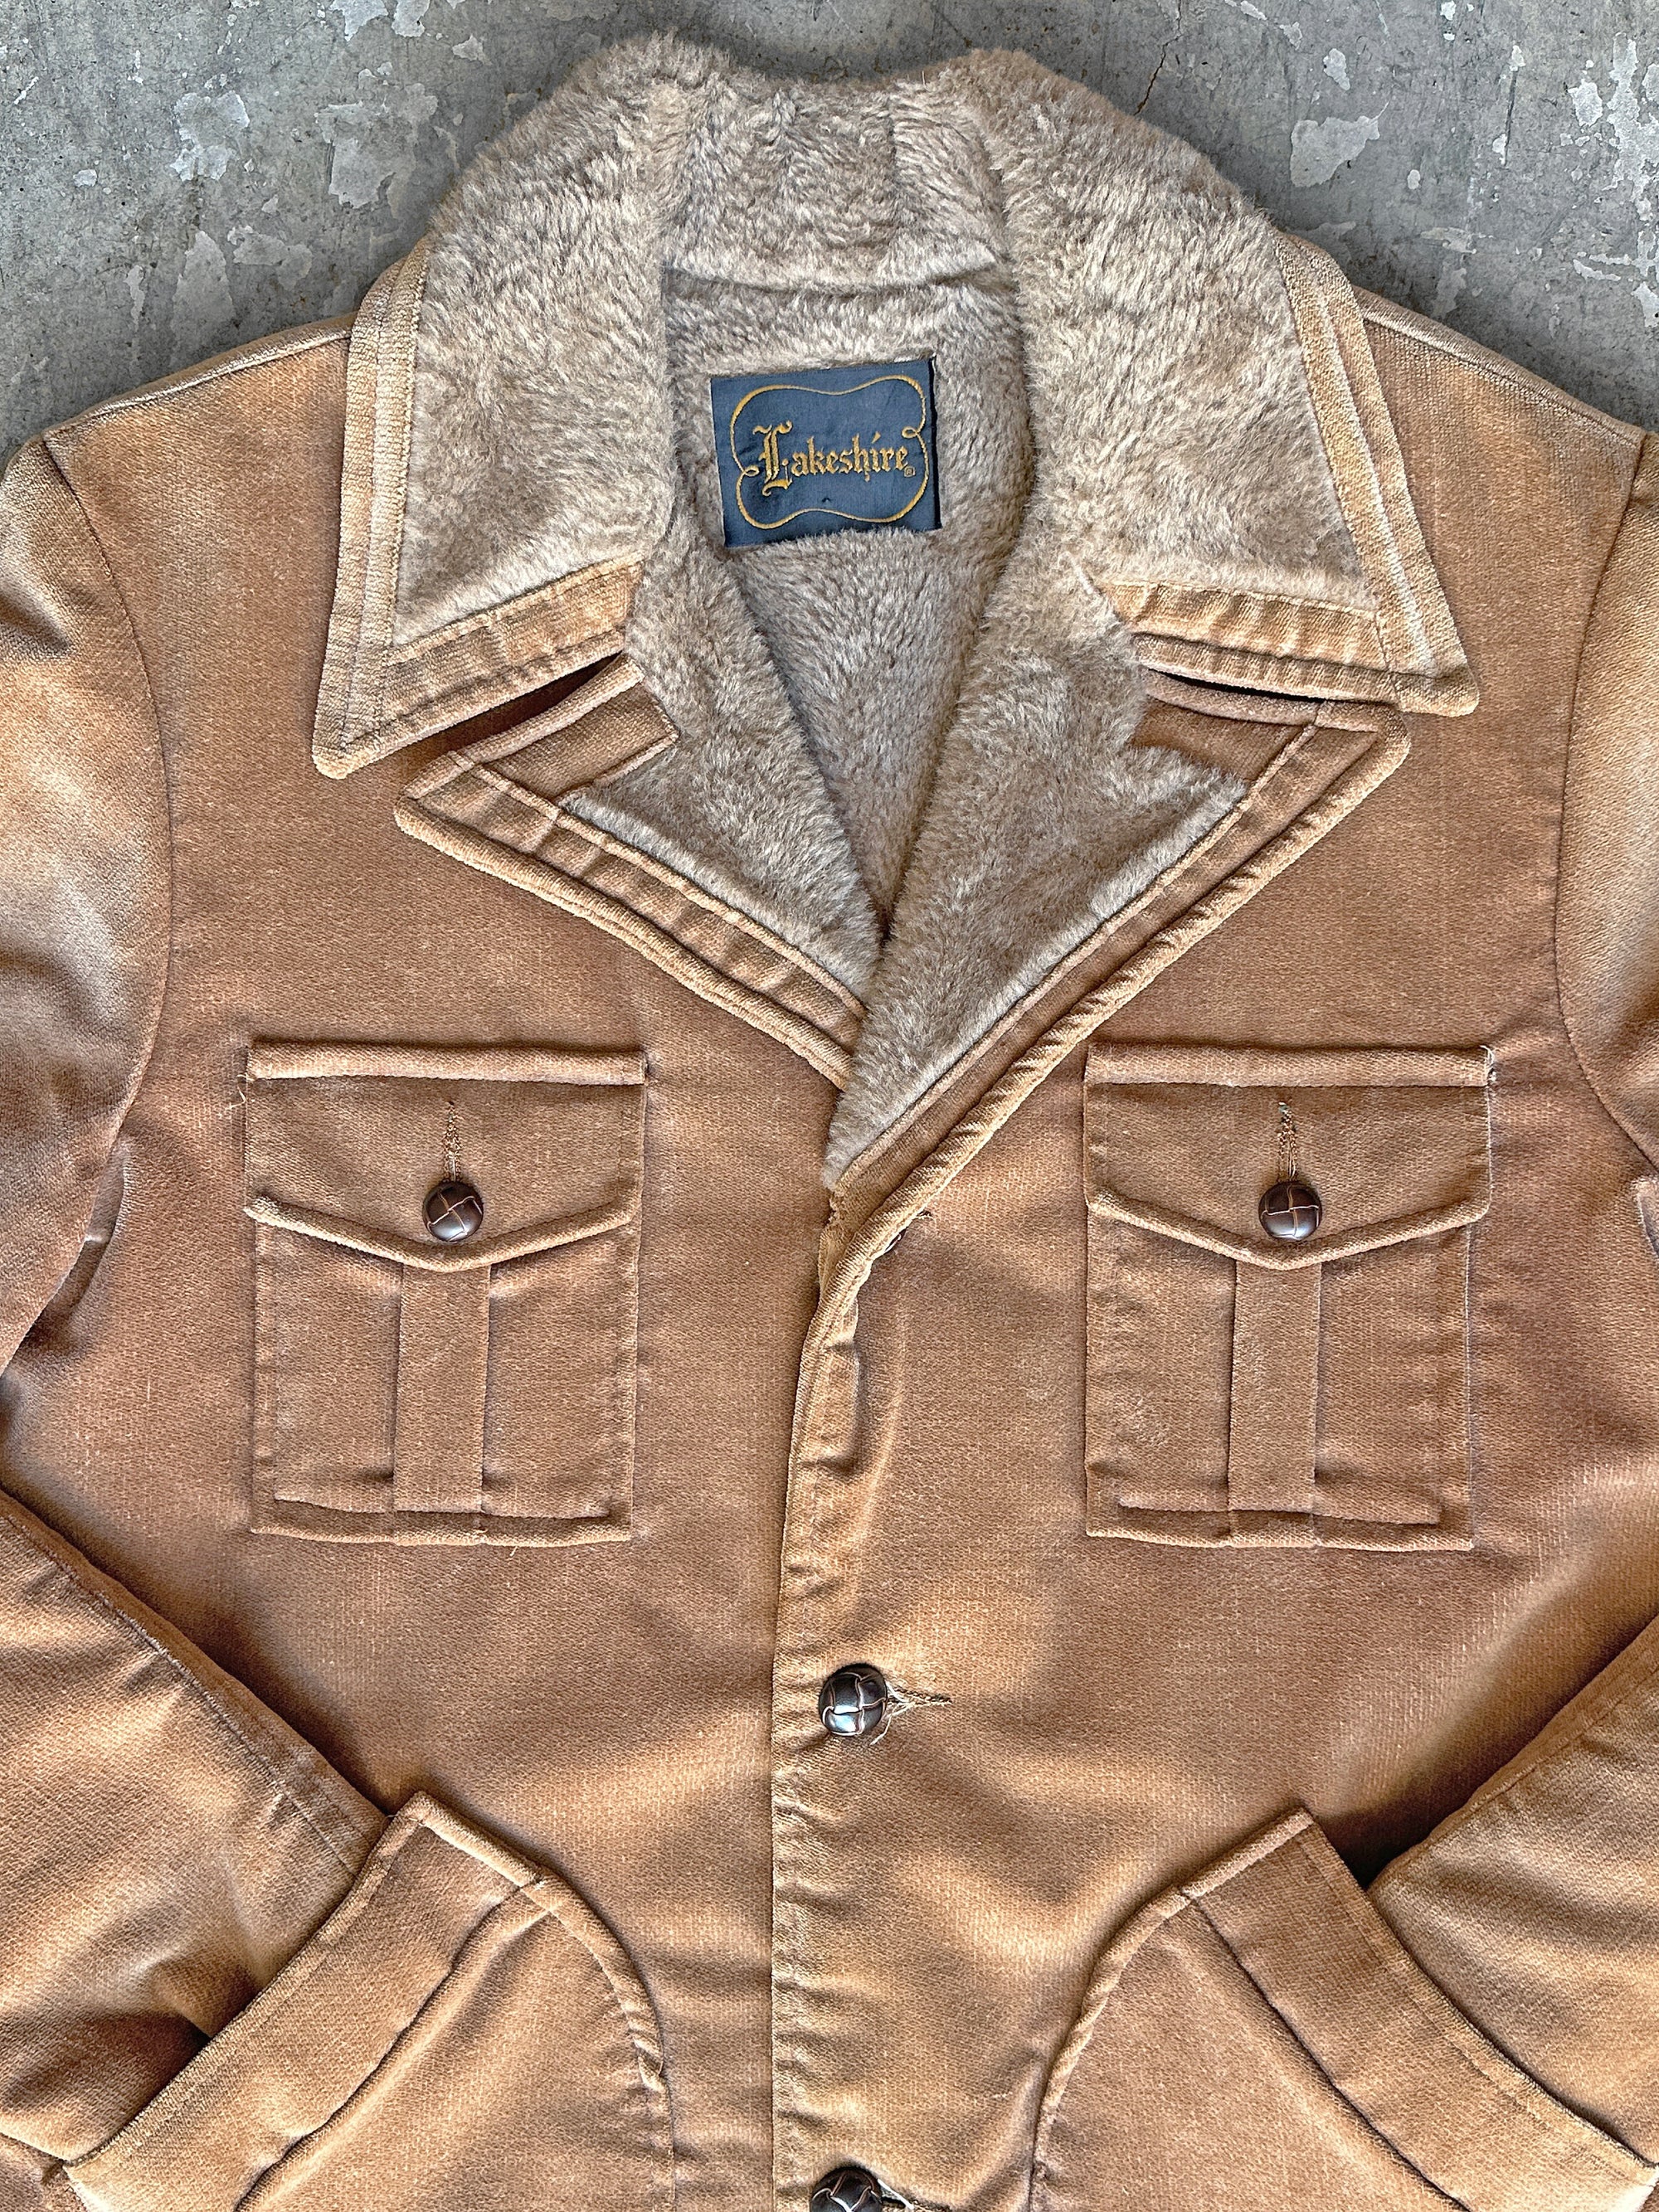 1970s Lakeshire Tan Shearling Jacket